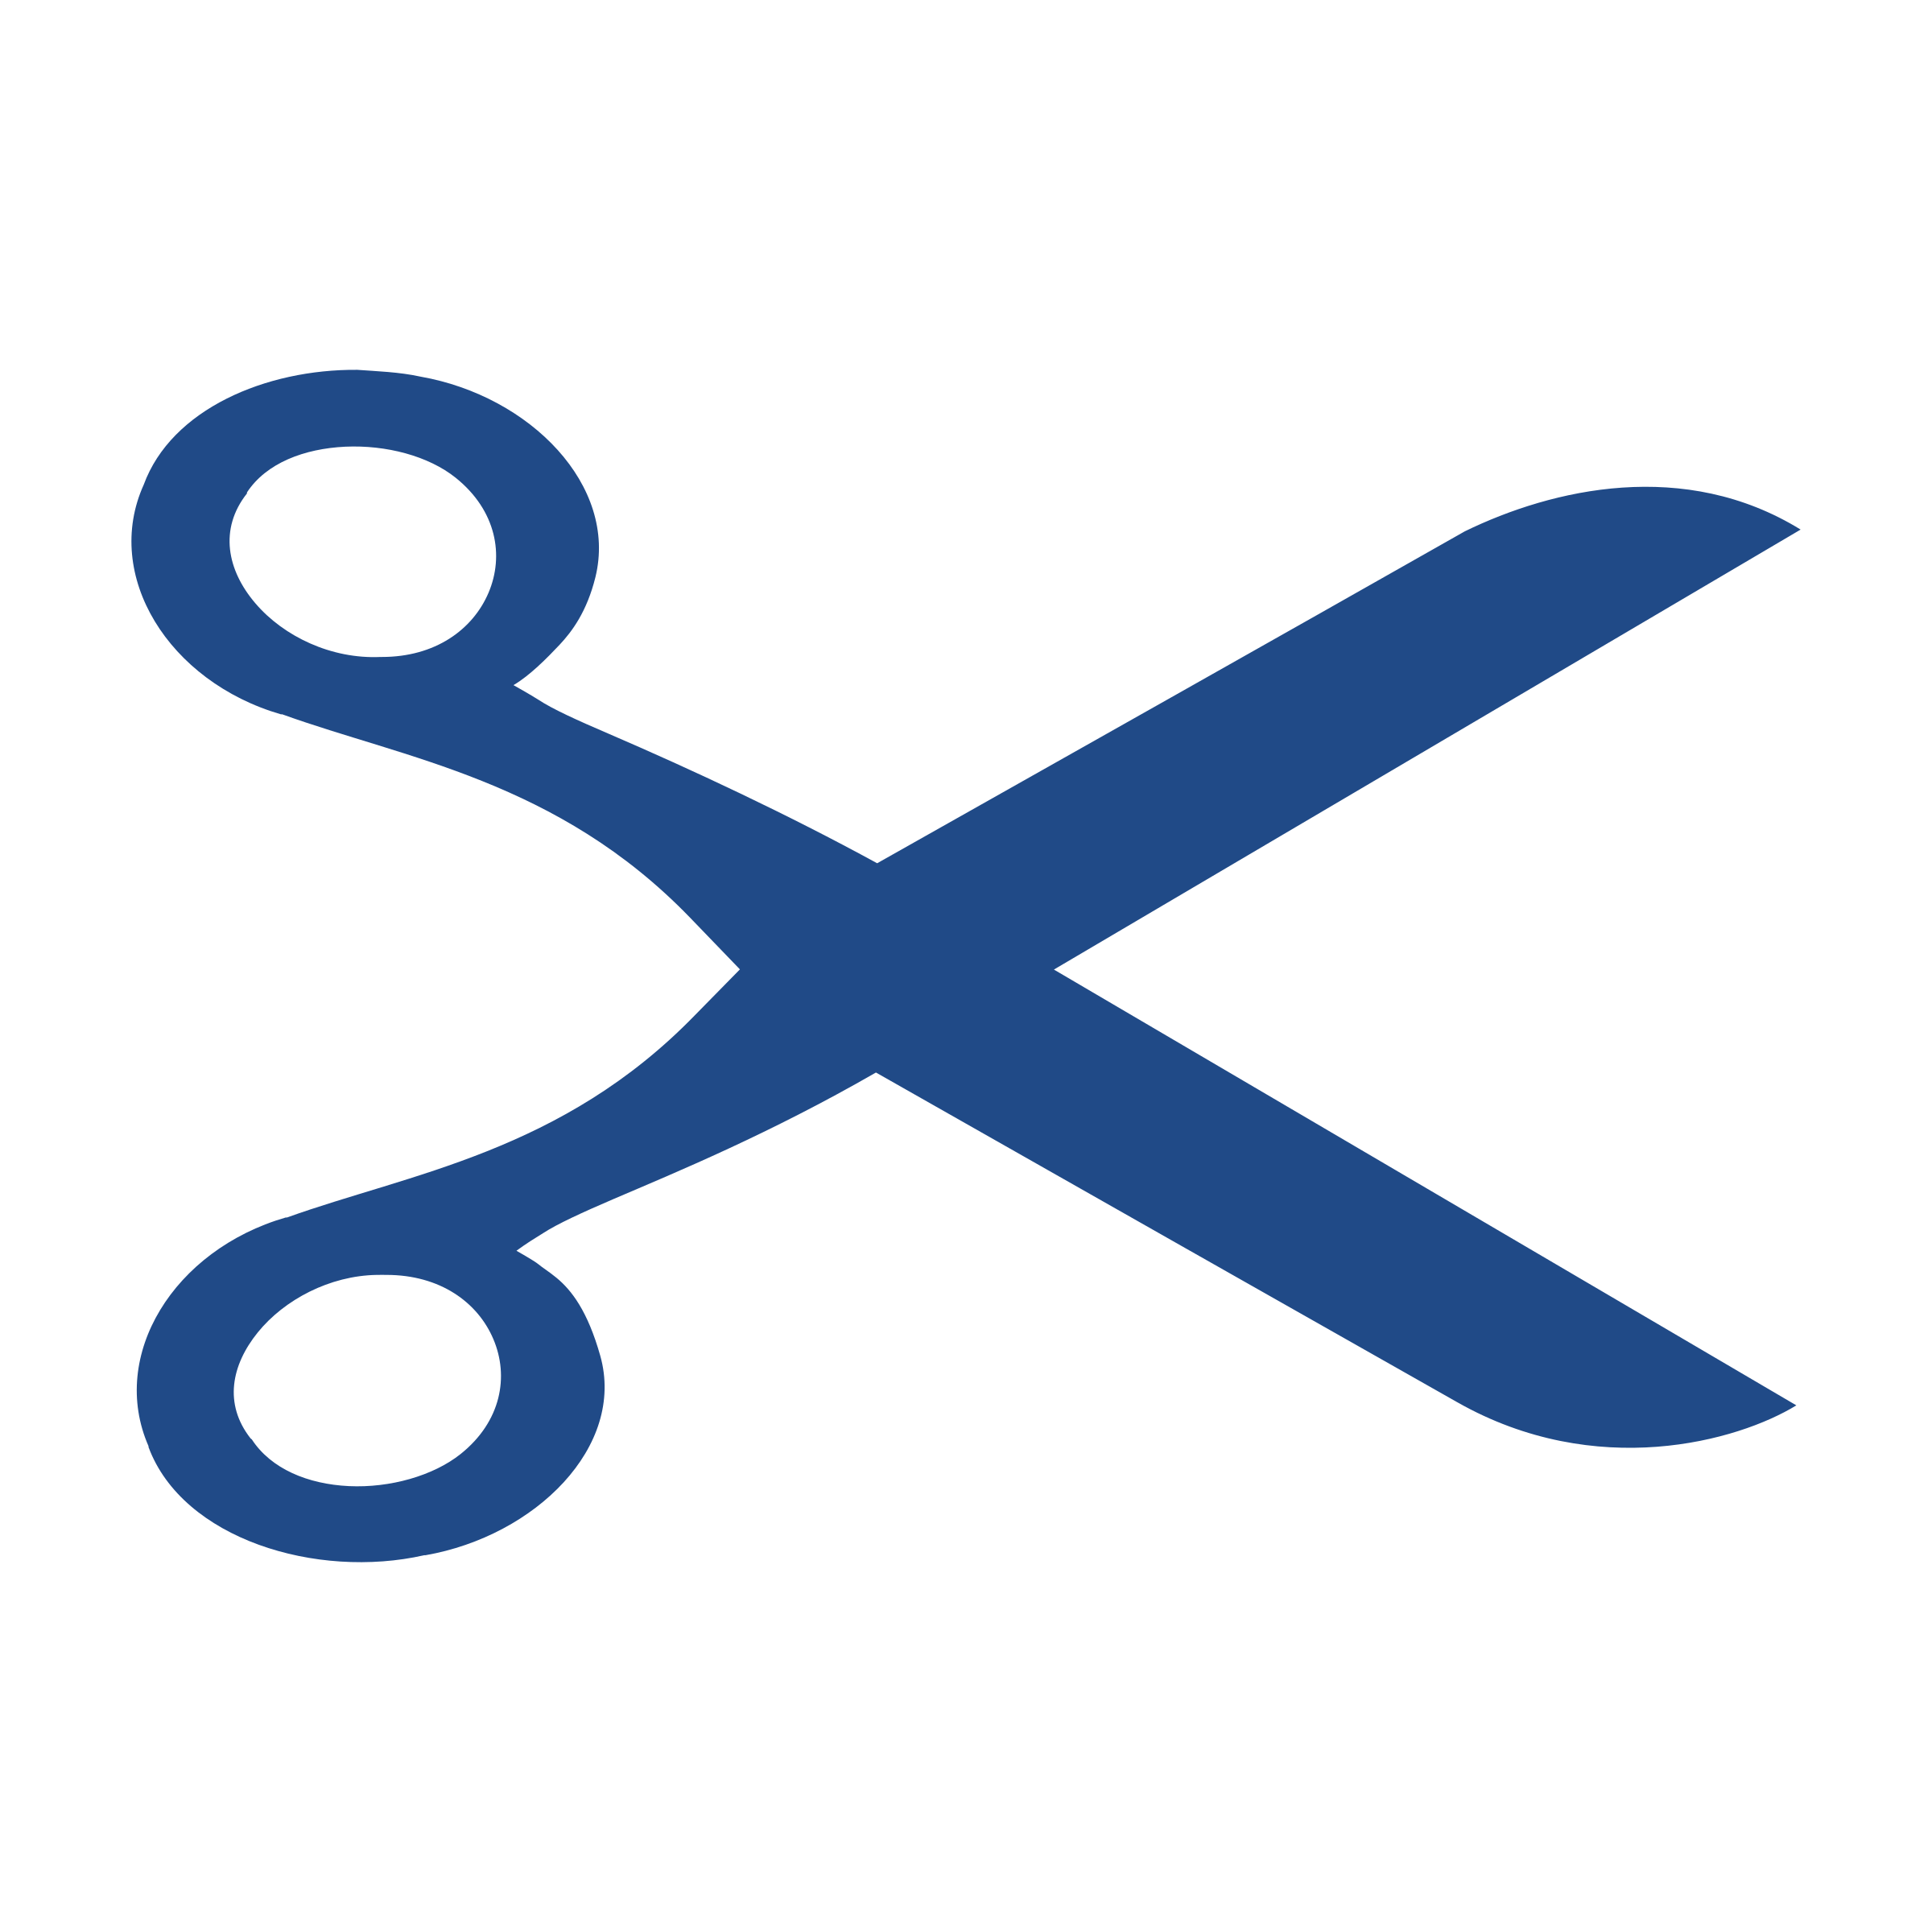 Clipart scissors symbol